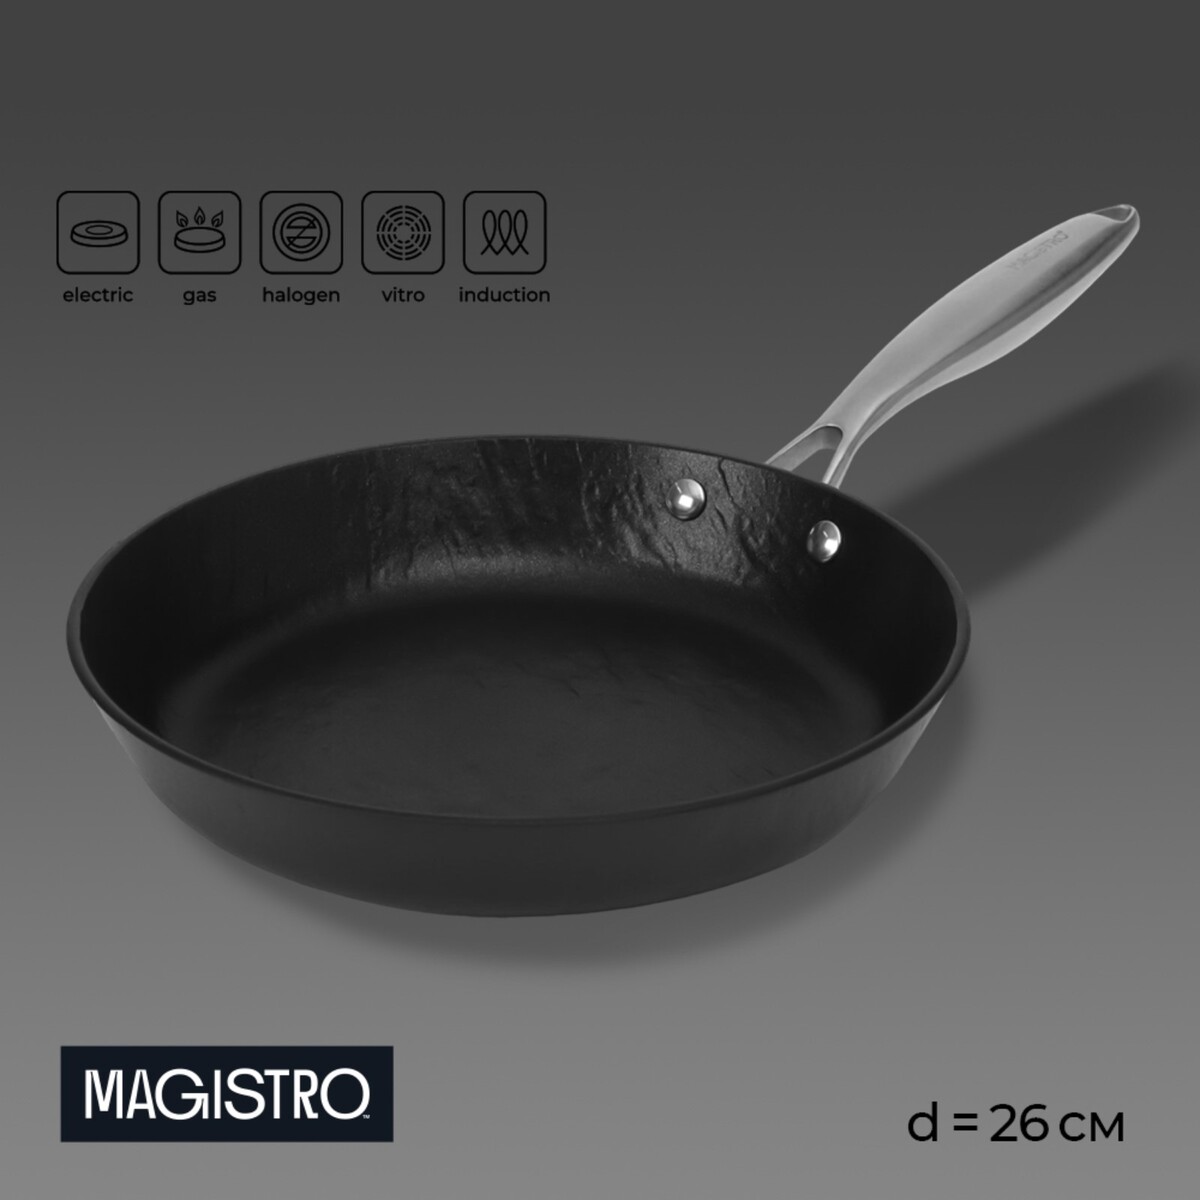 Сковорода magistro rock stone, d=26 см, h=4,8 см, антипригарное покрытие, индукция, цвет черный митьки rock